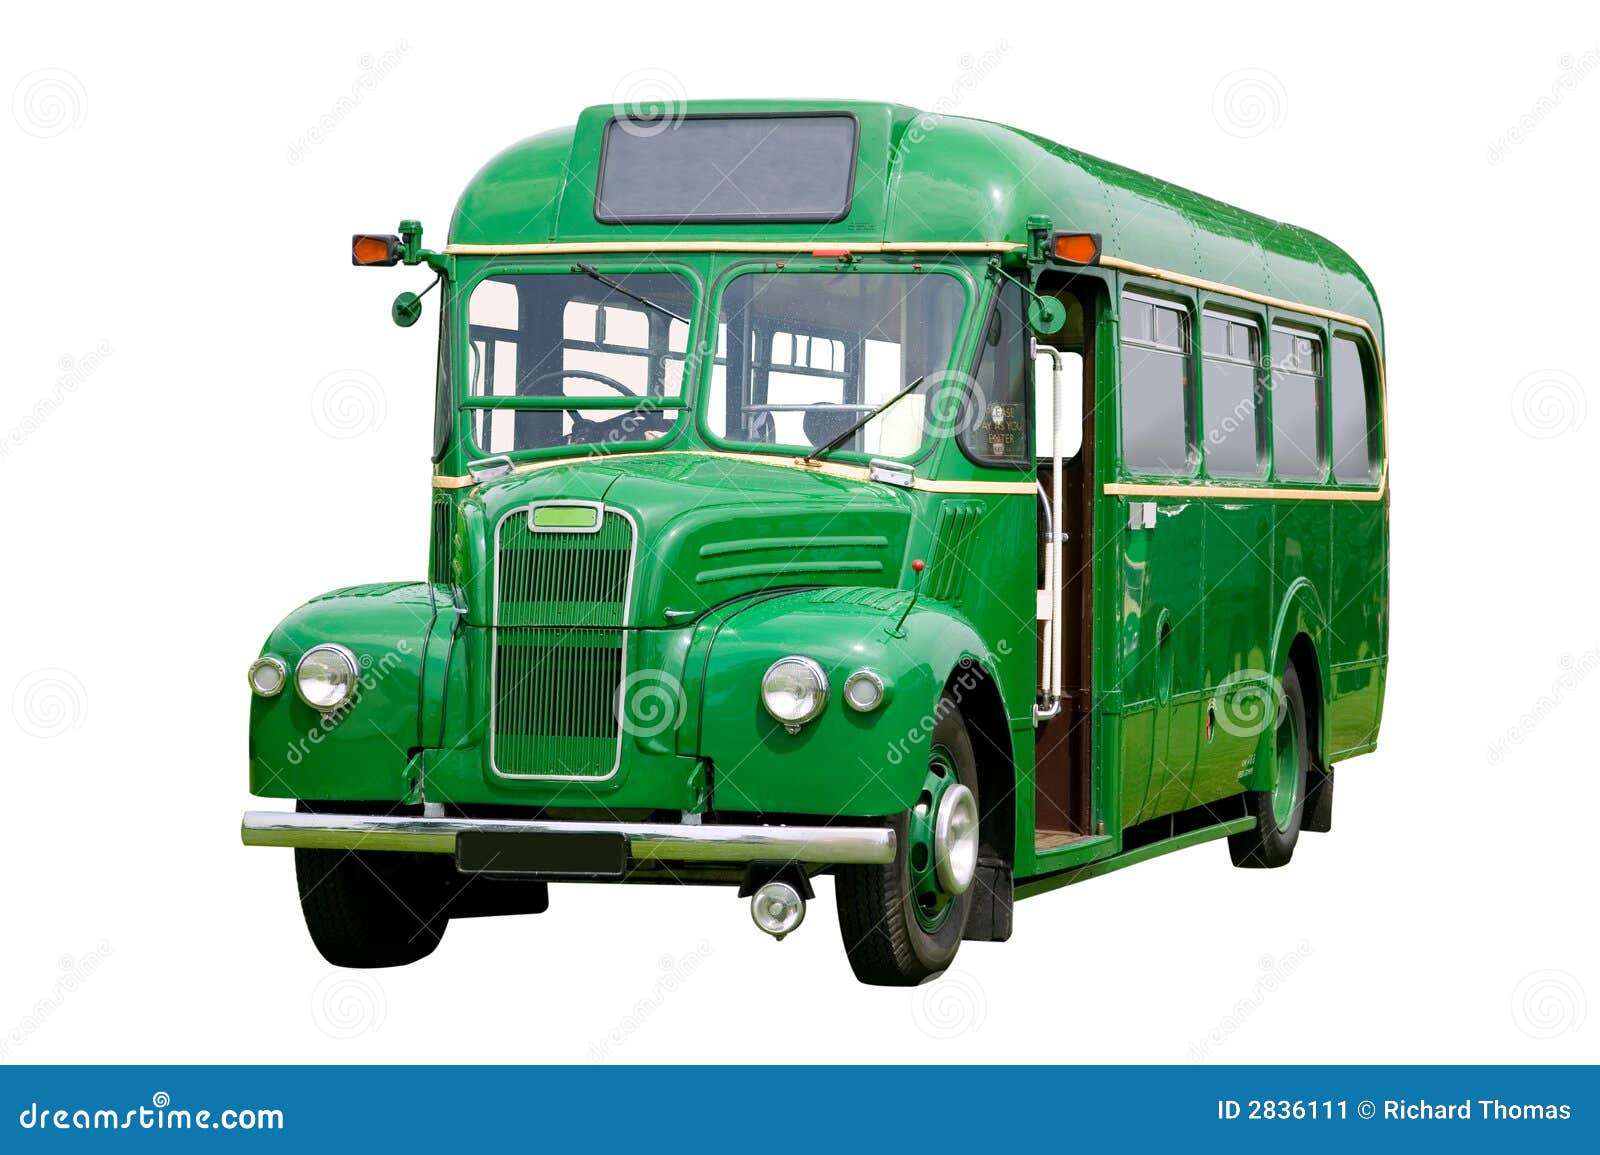 Levering klein Aardrijkskunde Oude groene bus stock afbeelding. Image of retro, wijnoogst - 2836111